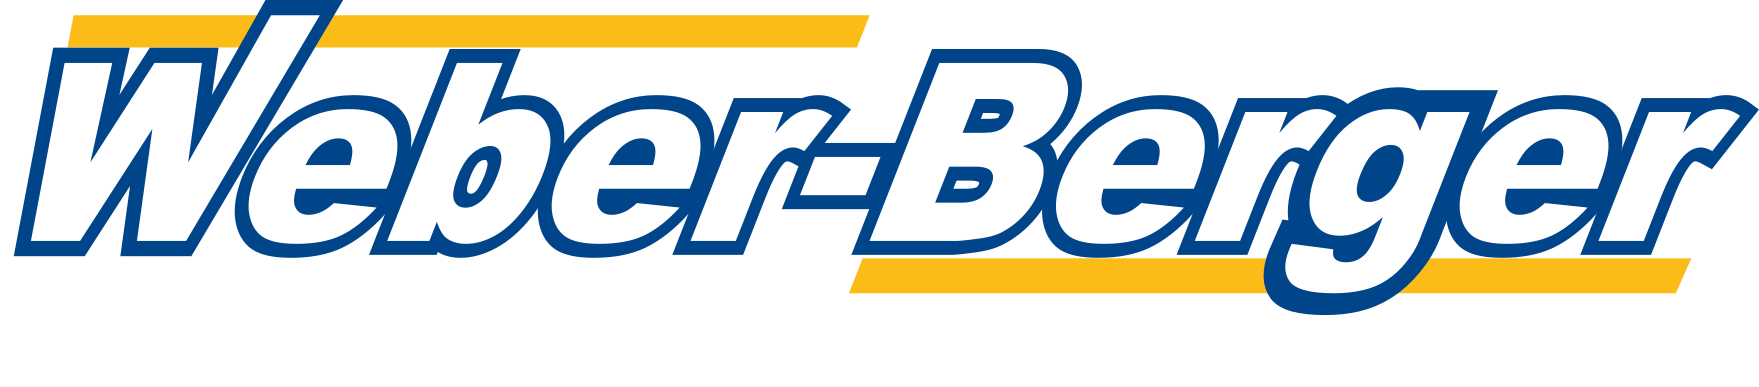 Weber-Berger